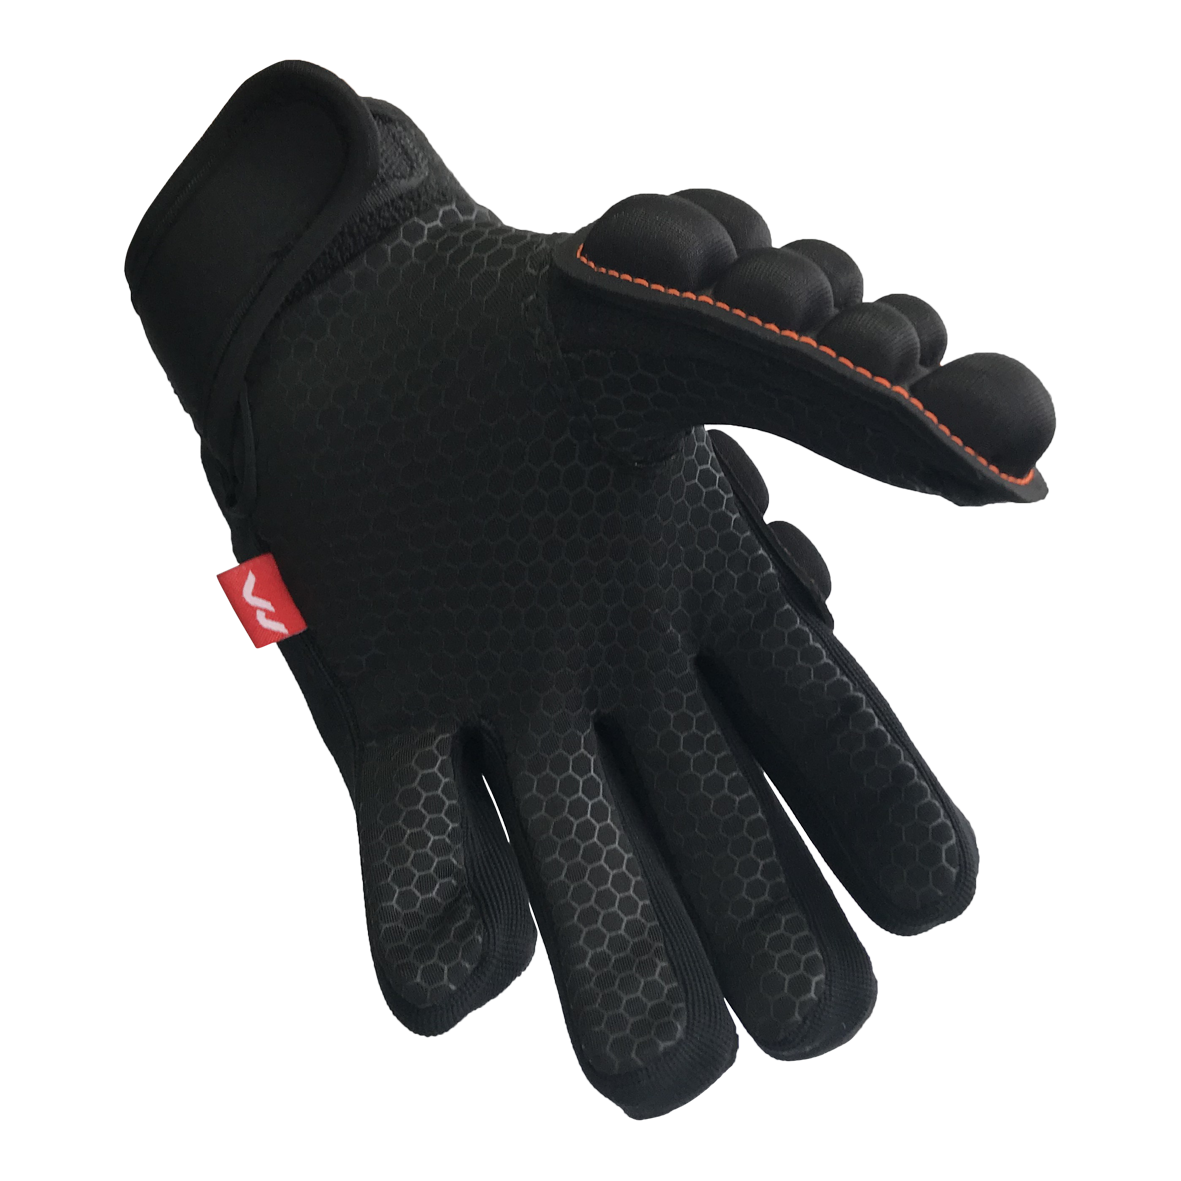 Mercian EVOLUTION 0.3 Glove - Black